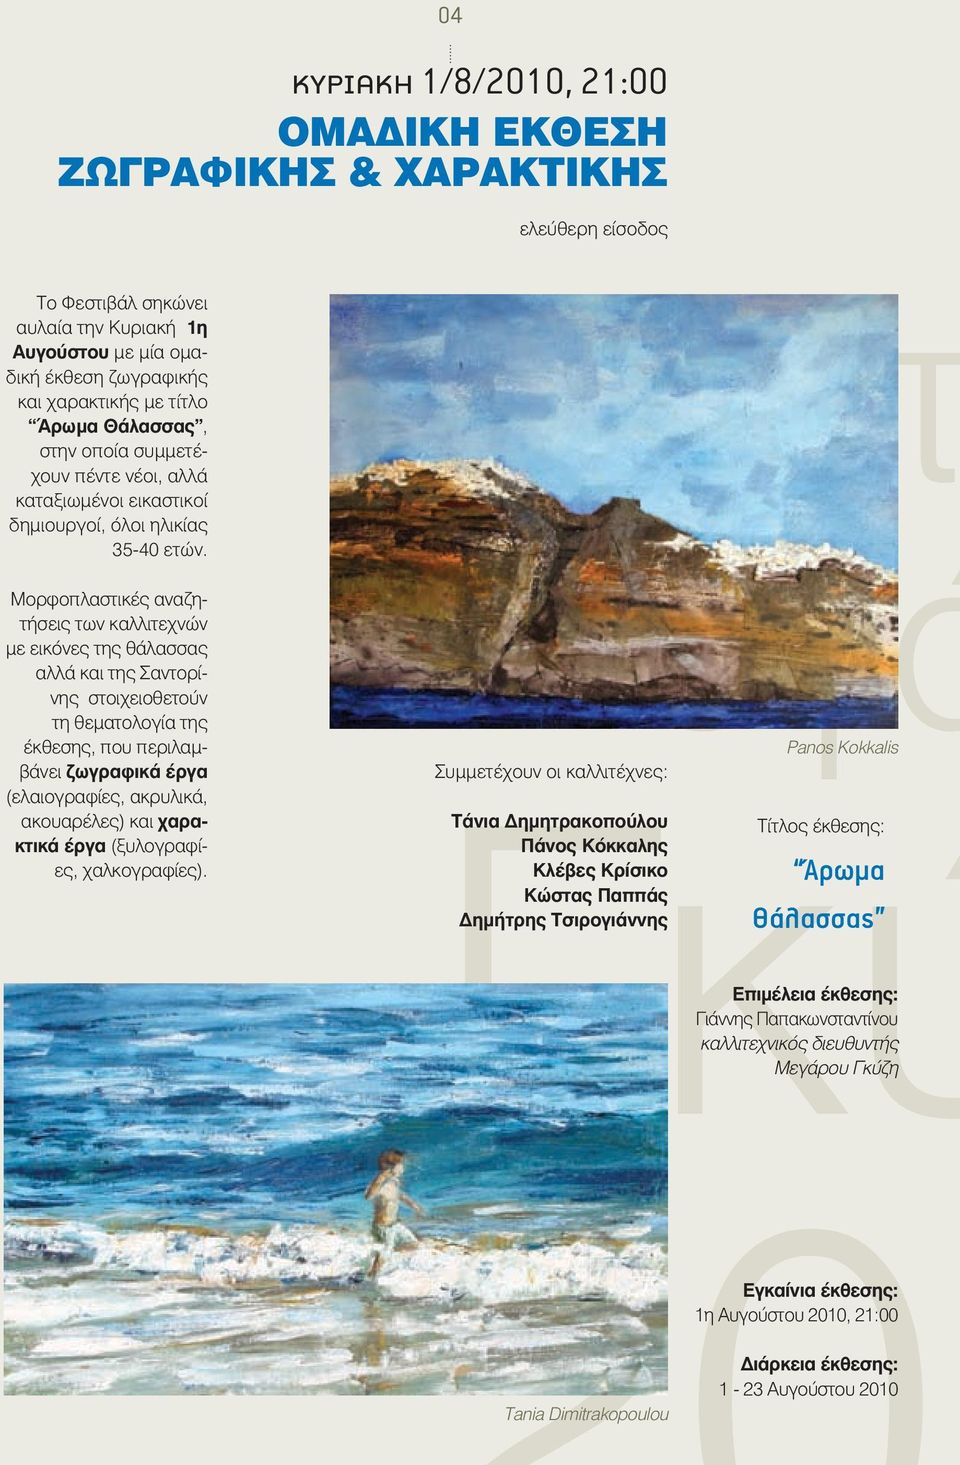 Μορφοπλαστικές αναζητήσεις των καλλιτεχνών με εικόνες της θάλασσας αλλά και της Σαντορίνης στοιχειοθετούν τη θεματολογία της έκθεσης, που περιλαμβάνει ζωγραφικά έργα (ελαιογραφίες, ακρυλικά,